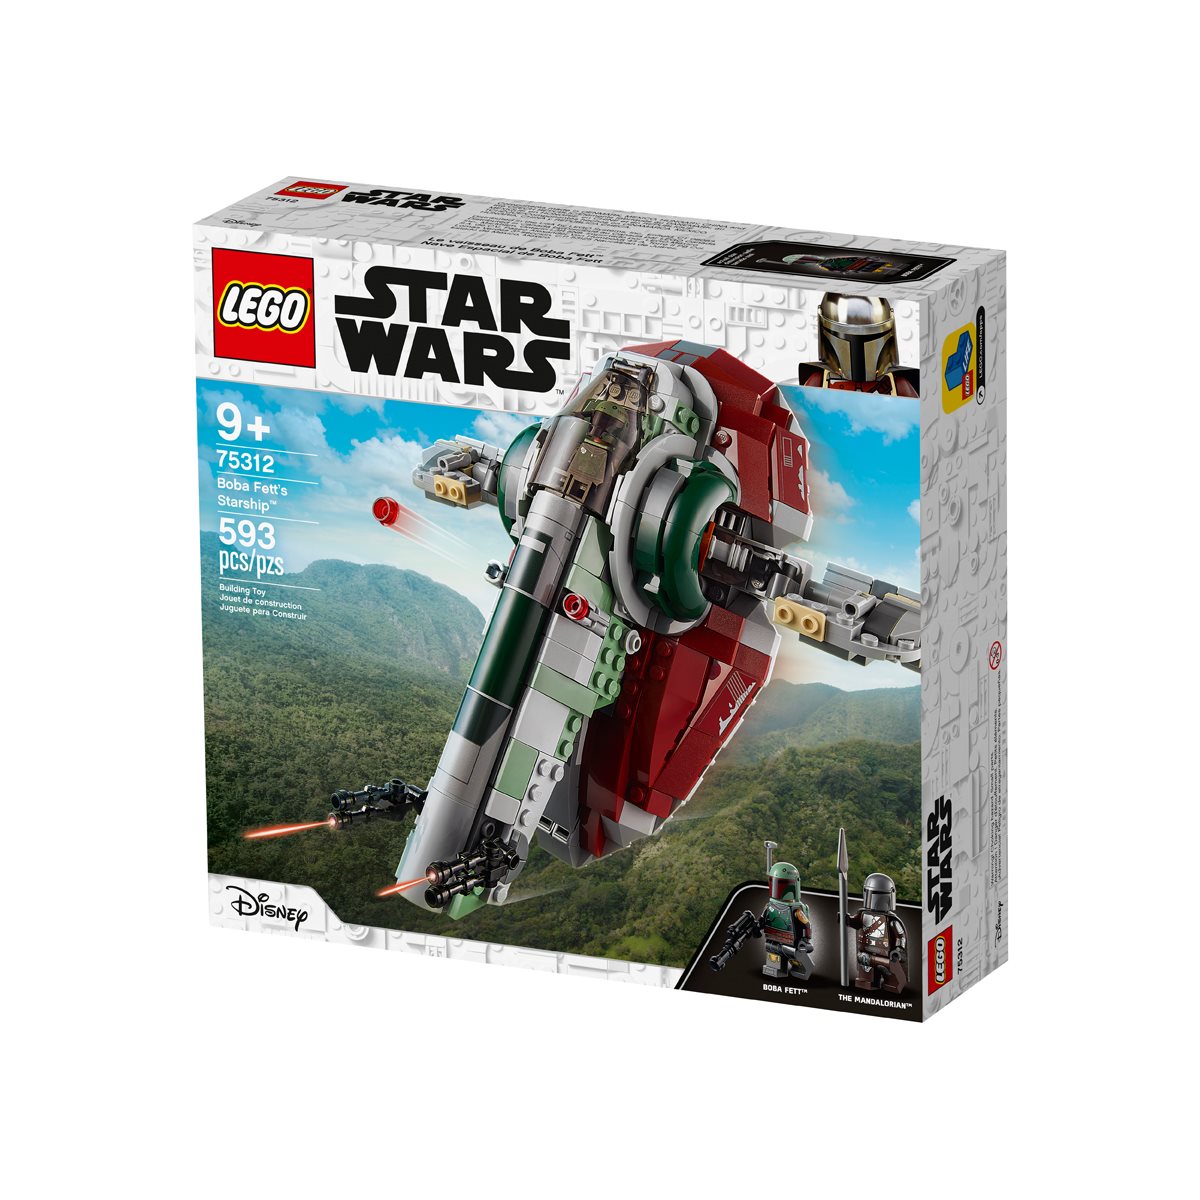 Lego Star Wars 75312 Boba Fetts Starship